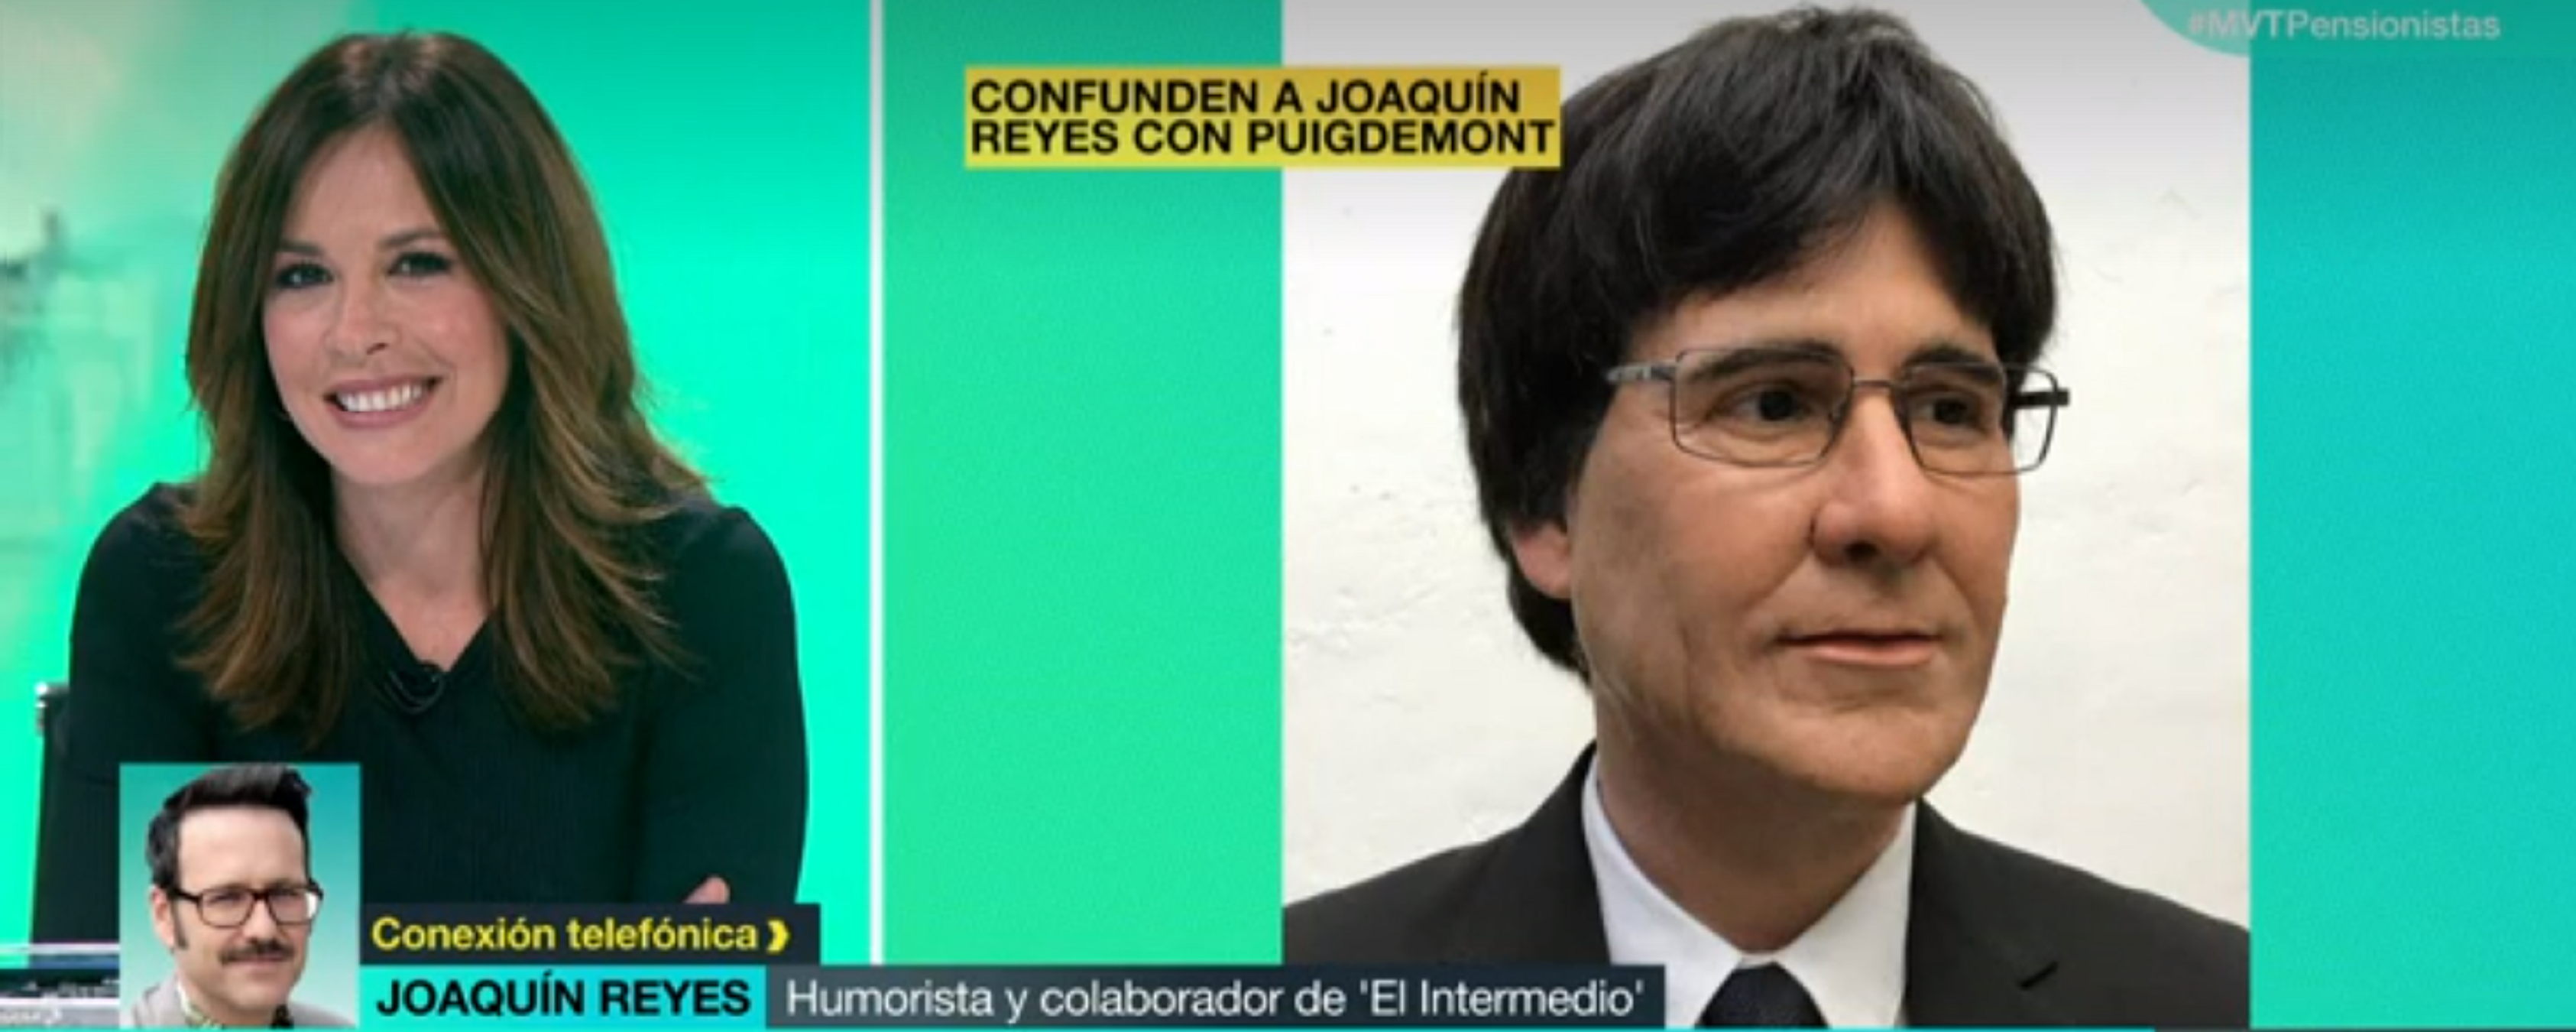 El imitador de Puigdemont: 'No estoy detenido pero he pasado sustico'